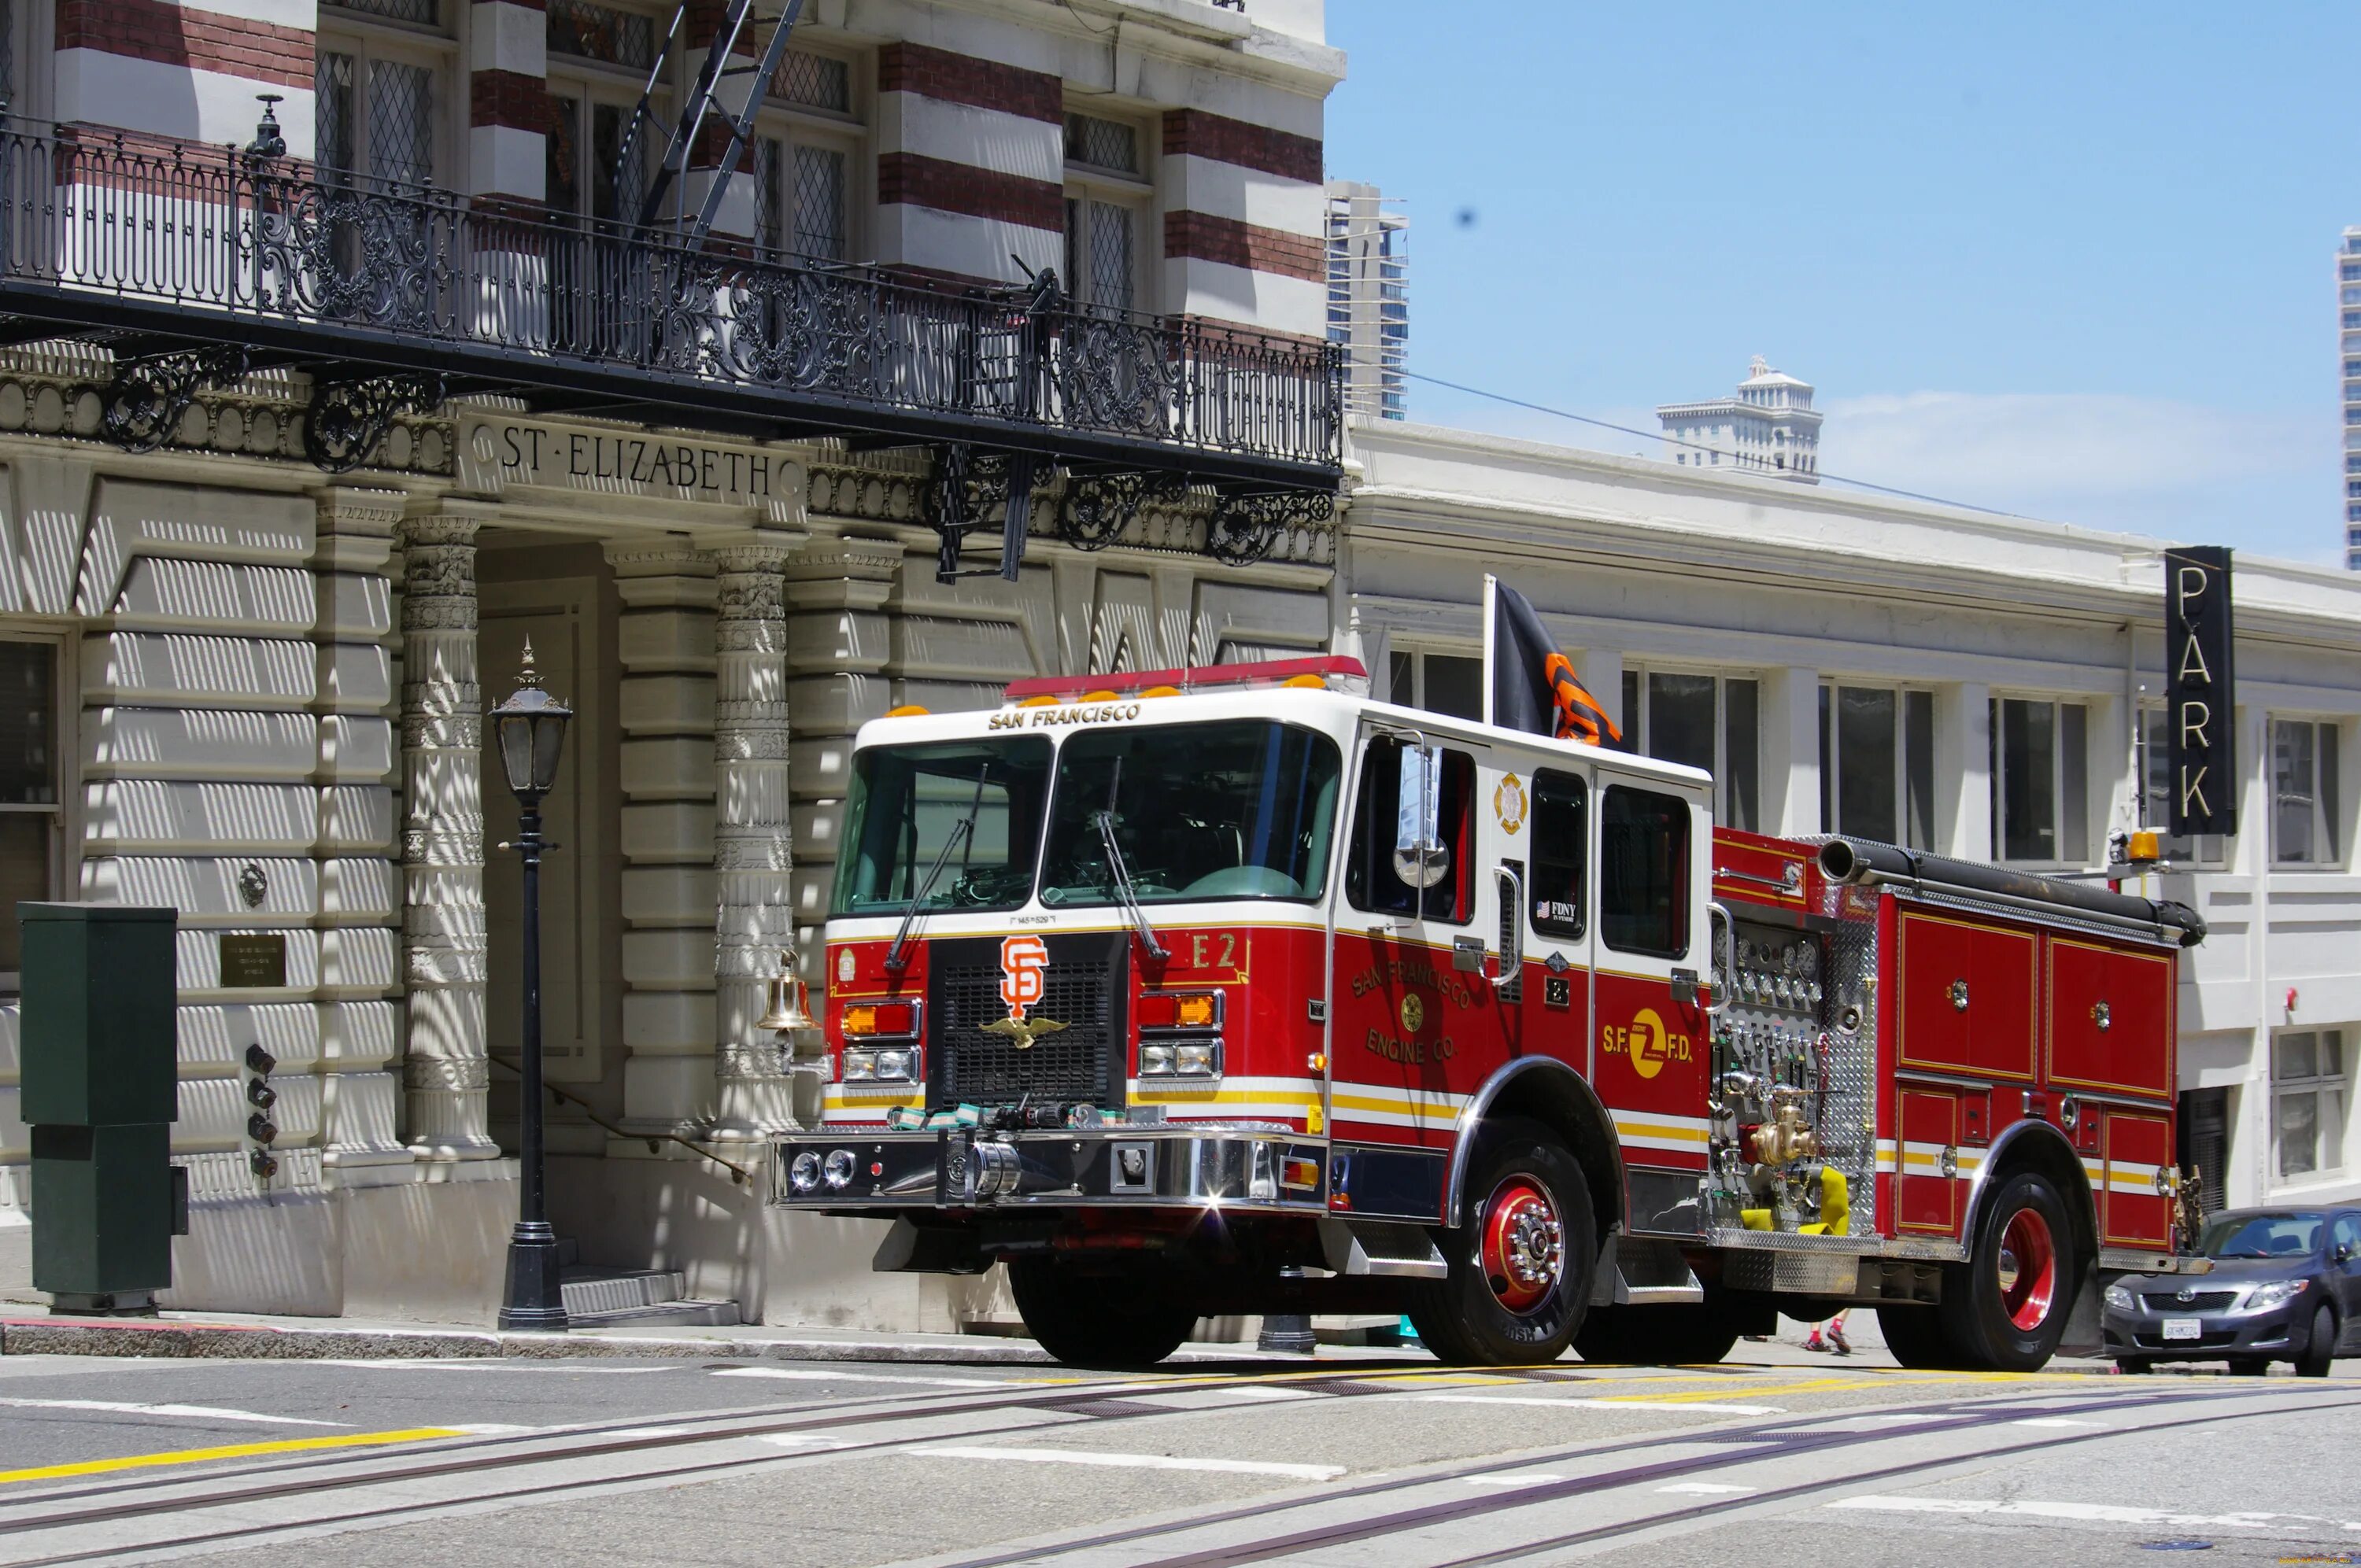 Машина "Fire Truck" пожарная, 49450. Сан Франциско пожарная. Пожарная машина Сан Франциско. Пожарный грузовик